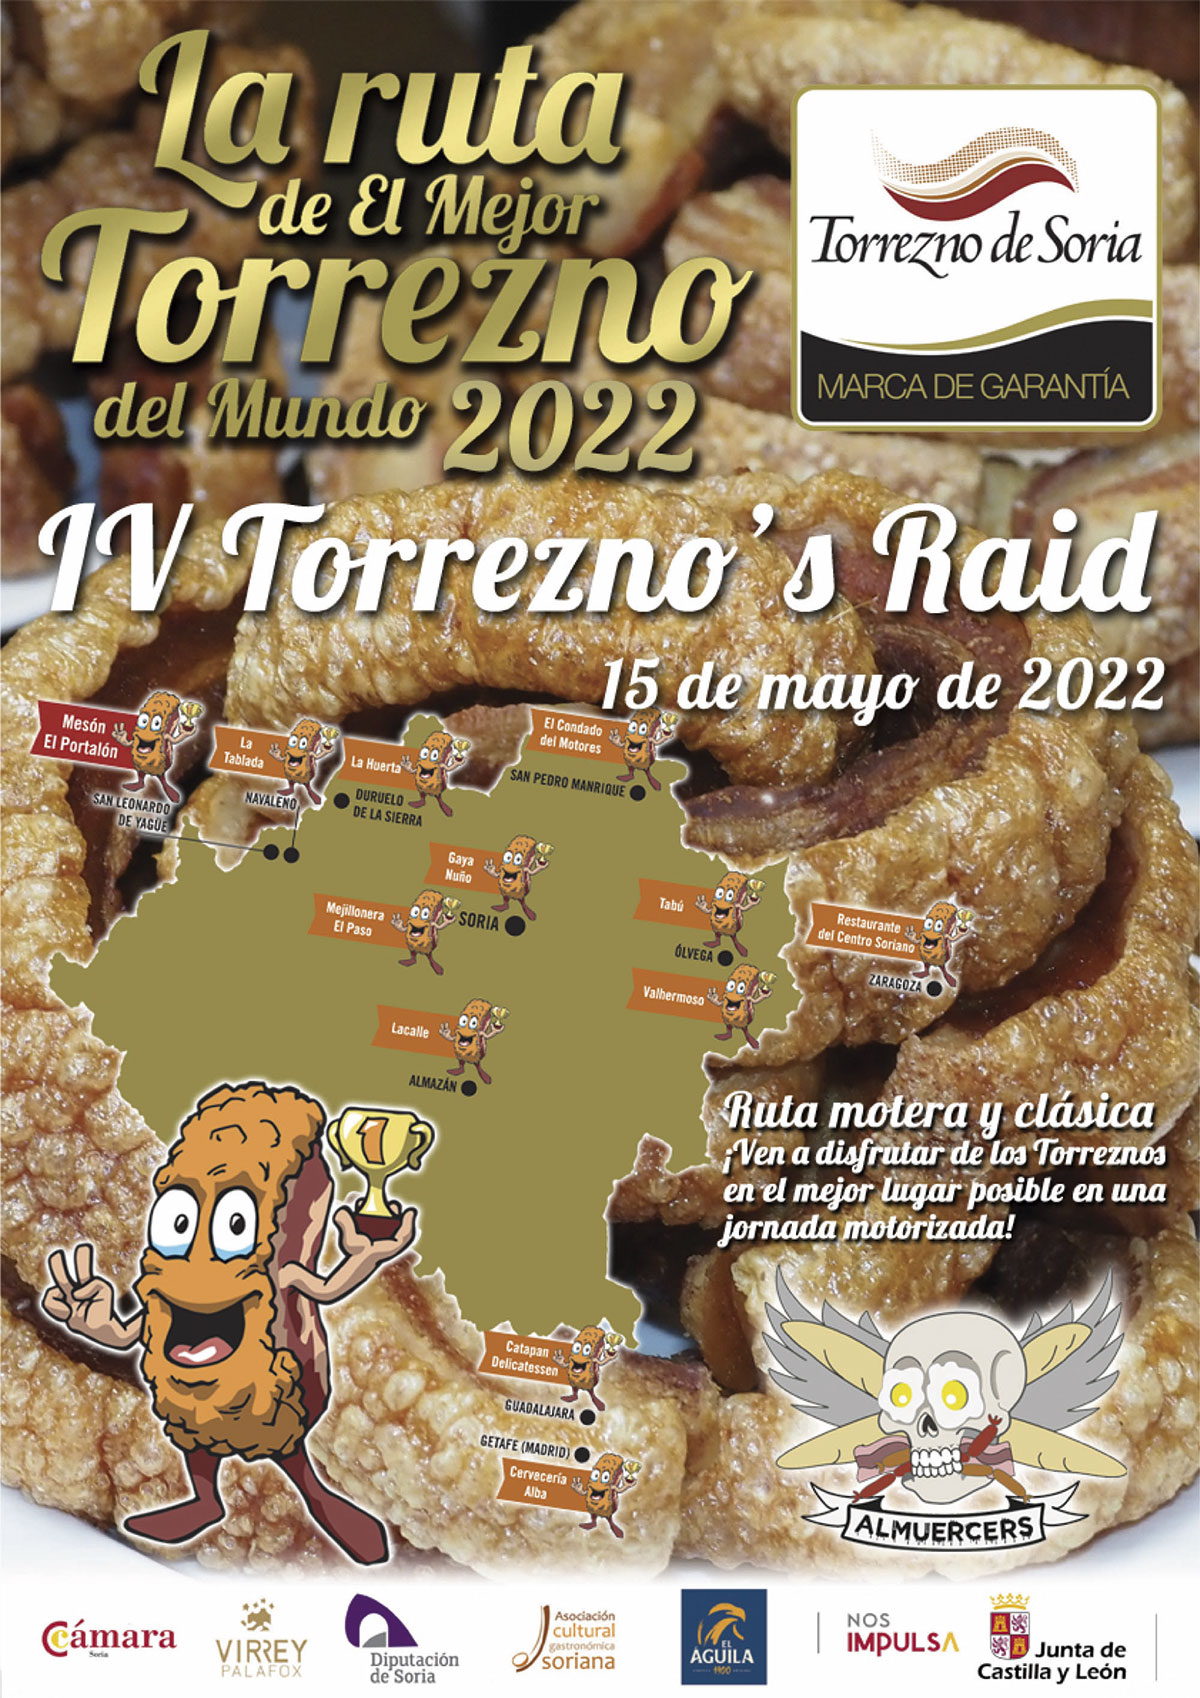 Torrezno’s Raid: rutas en moto y gastronomía